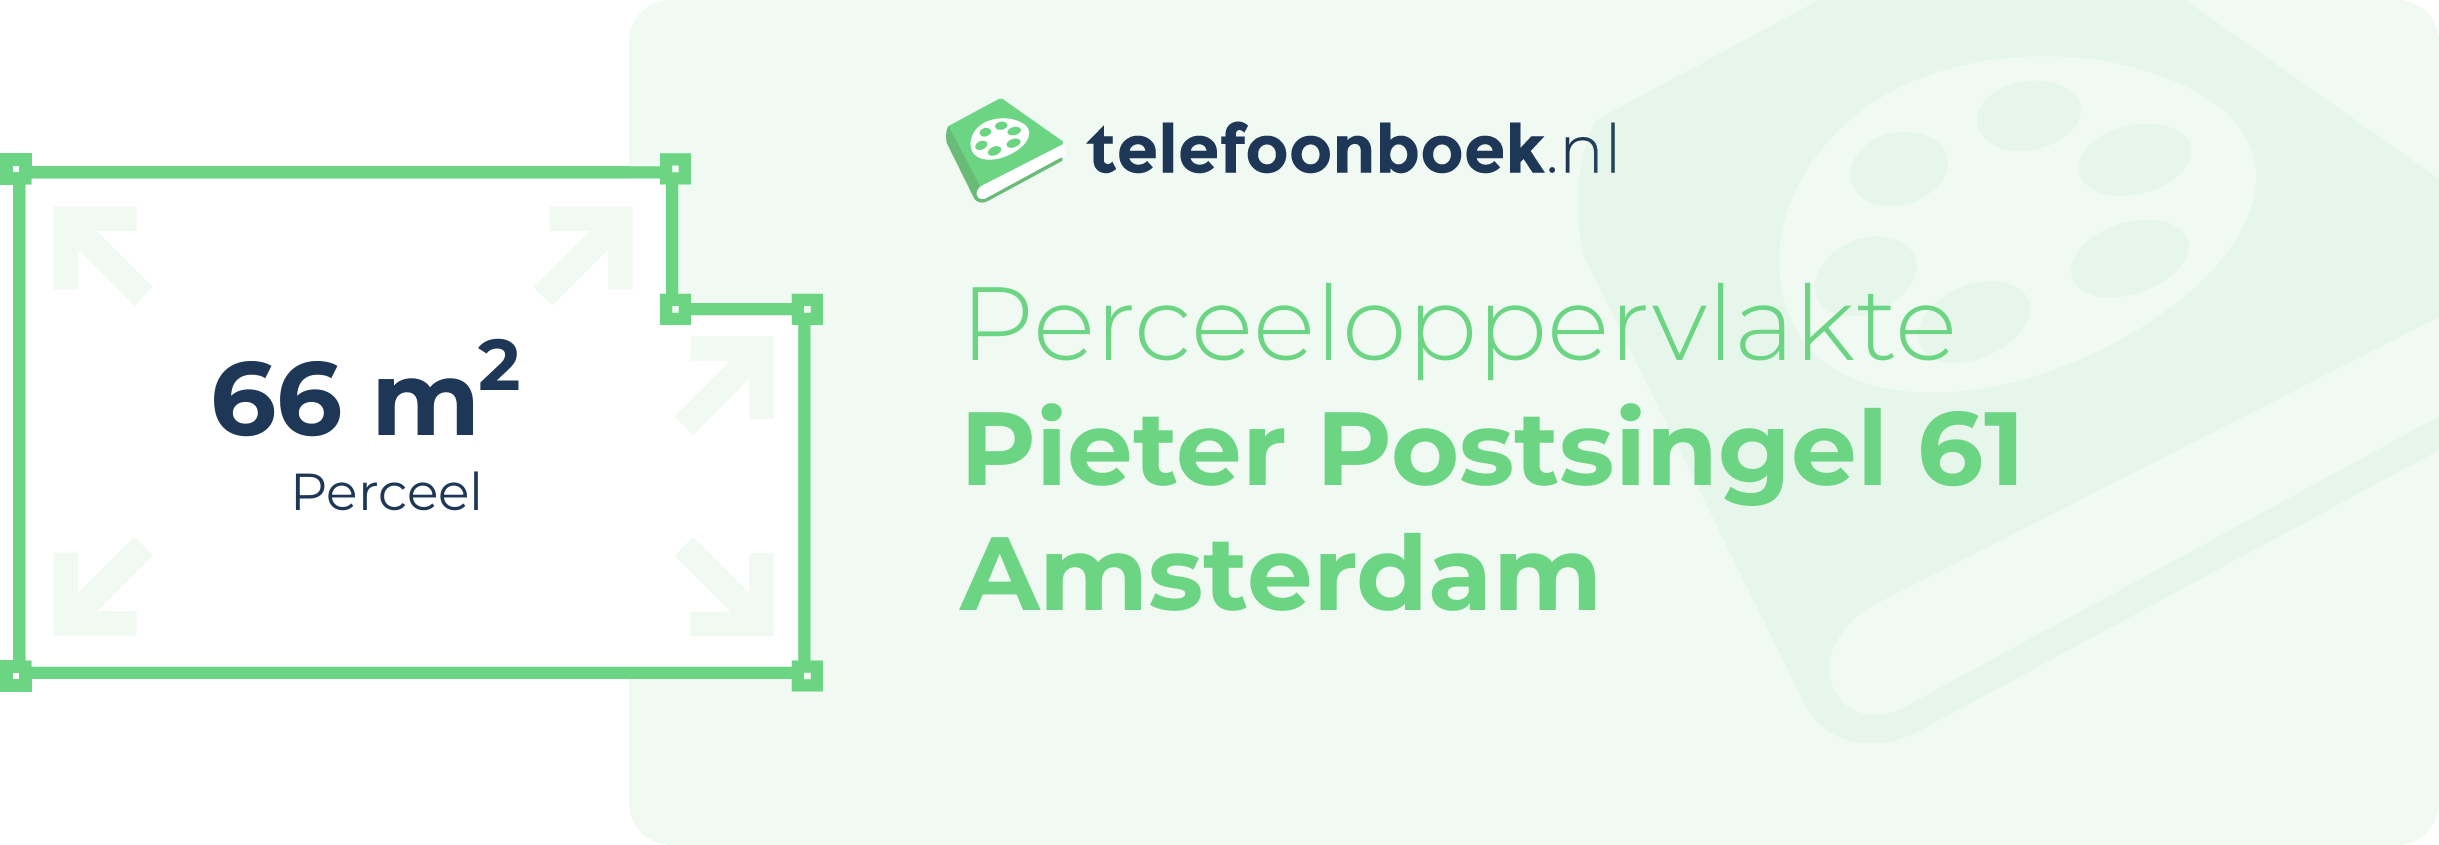 Perceeloppervlakte Pieter Postsingel 61 Amsterdam